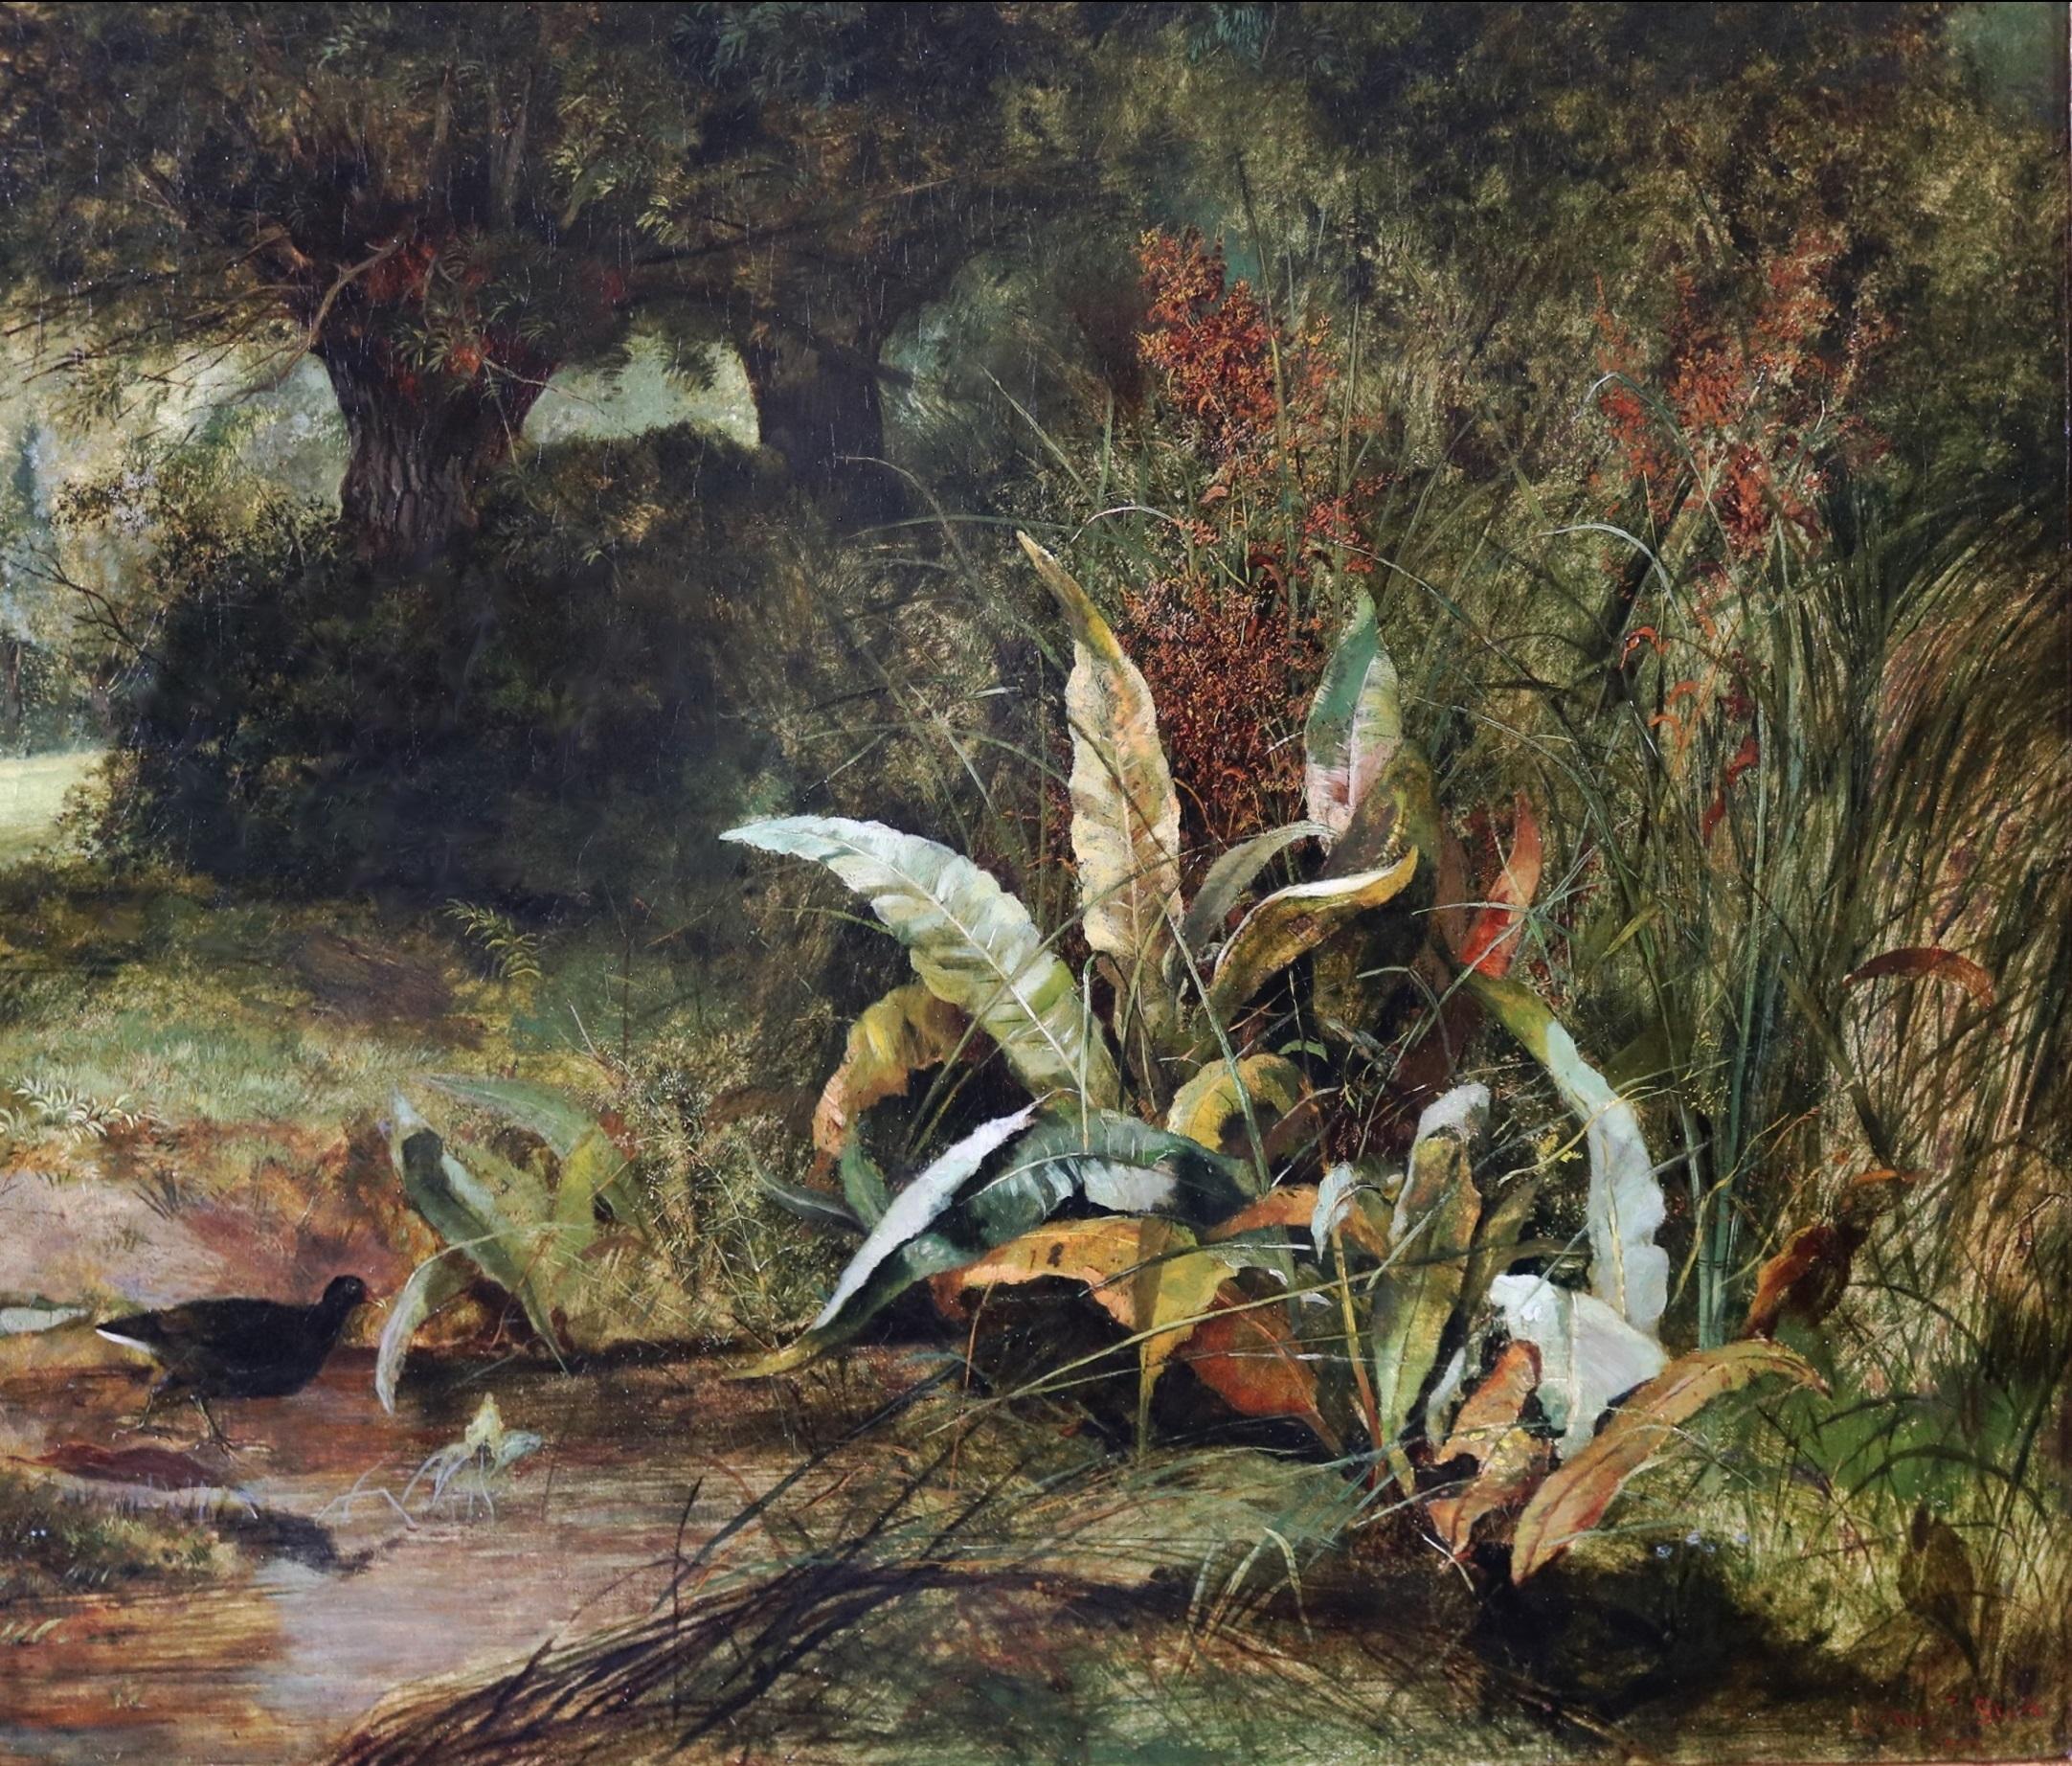 Peinture à l'huile de l'Académie royale du 19e siècle - Paysage de rivière d'été victorien anglais 3